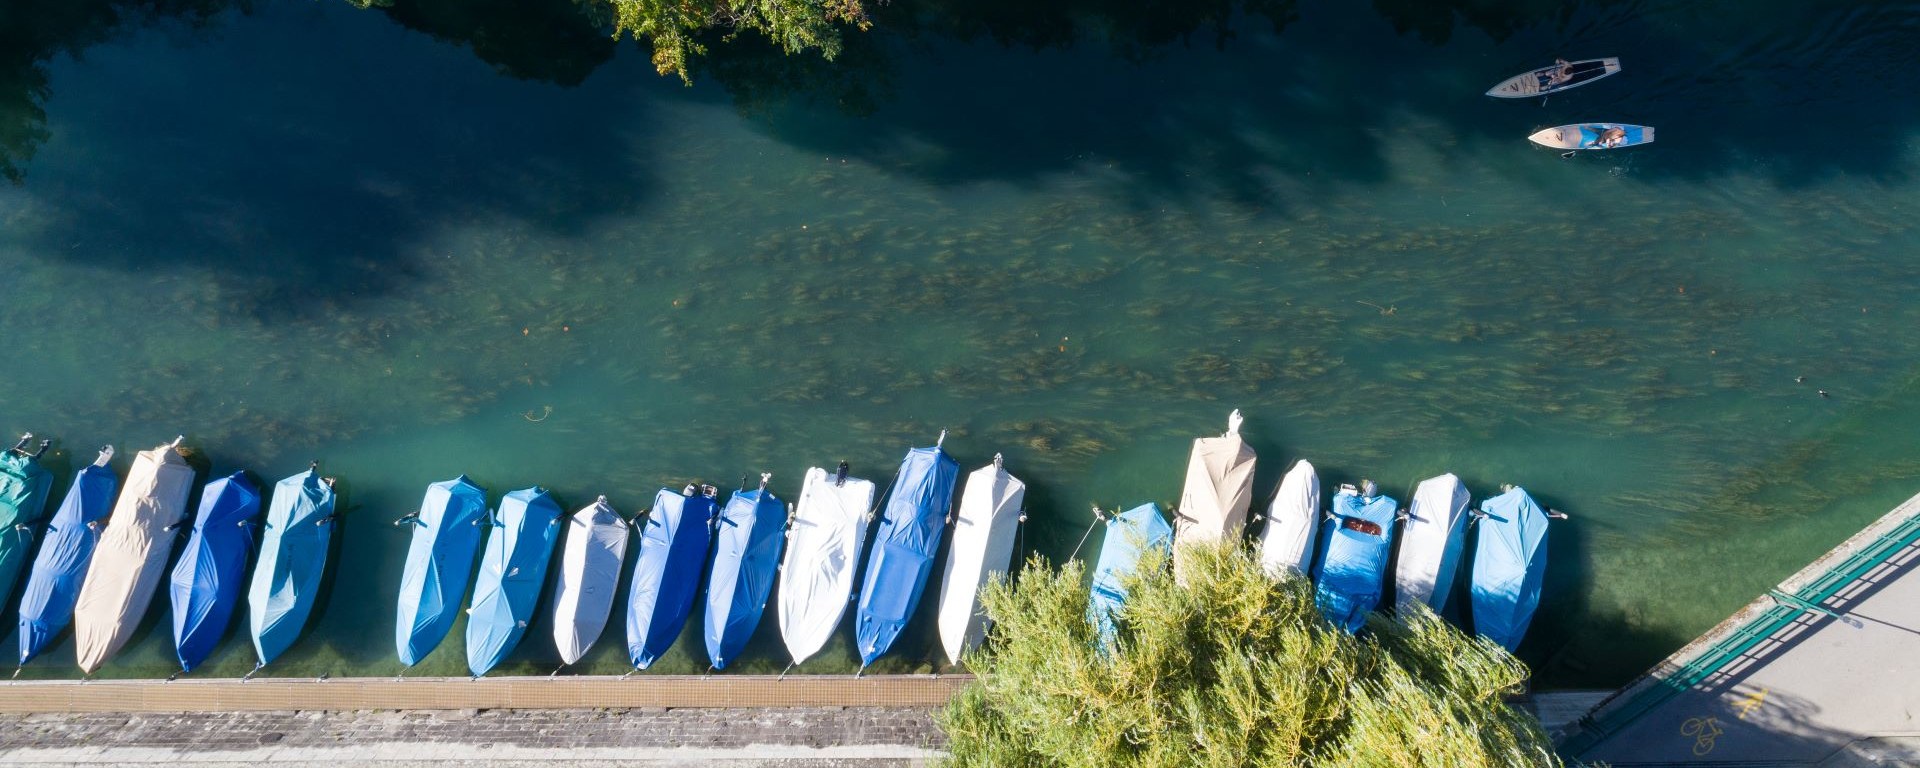 Luftansicht eines ruhigen Flussufers mit angelegten Booten, die mit blauem und beigem Planen bedeckt sind, neben einem gepflasterten Gehweg. Zwei Personen sind auf dem Wasser beim Stand-Up Paddeln zu sehen, mit üppigen Bäumen am Ufer.